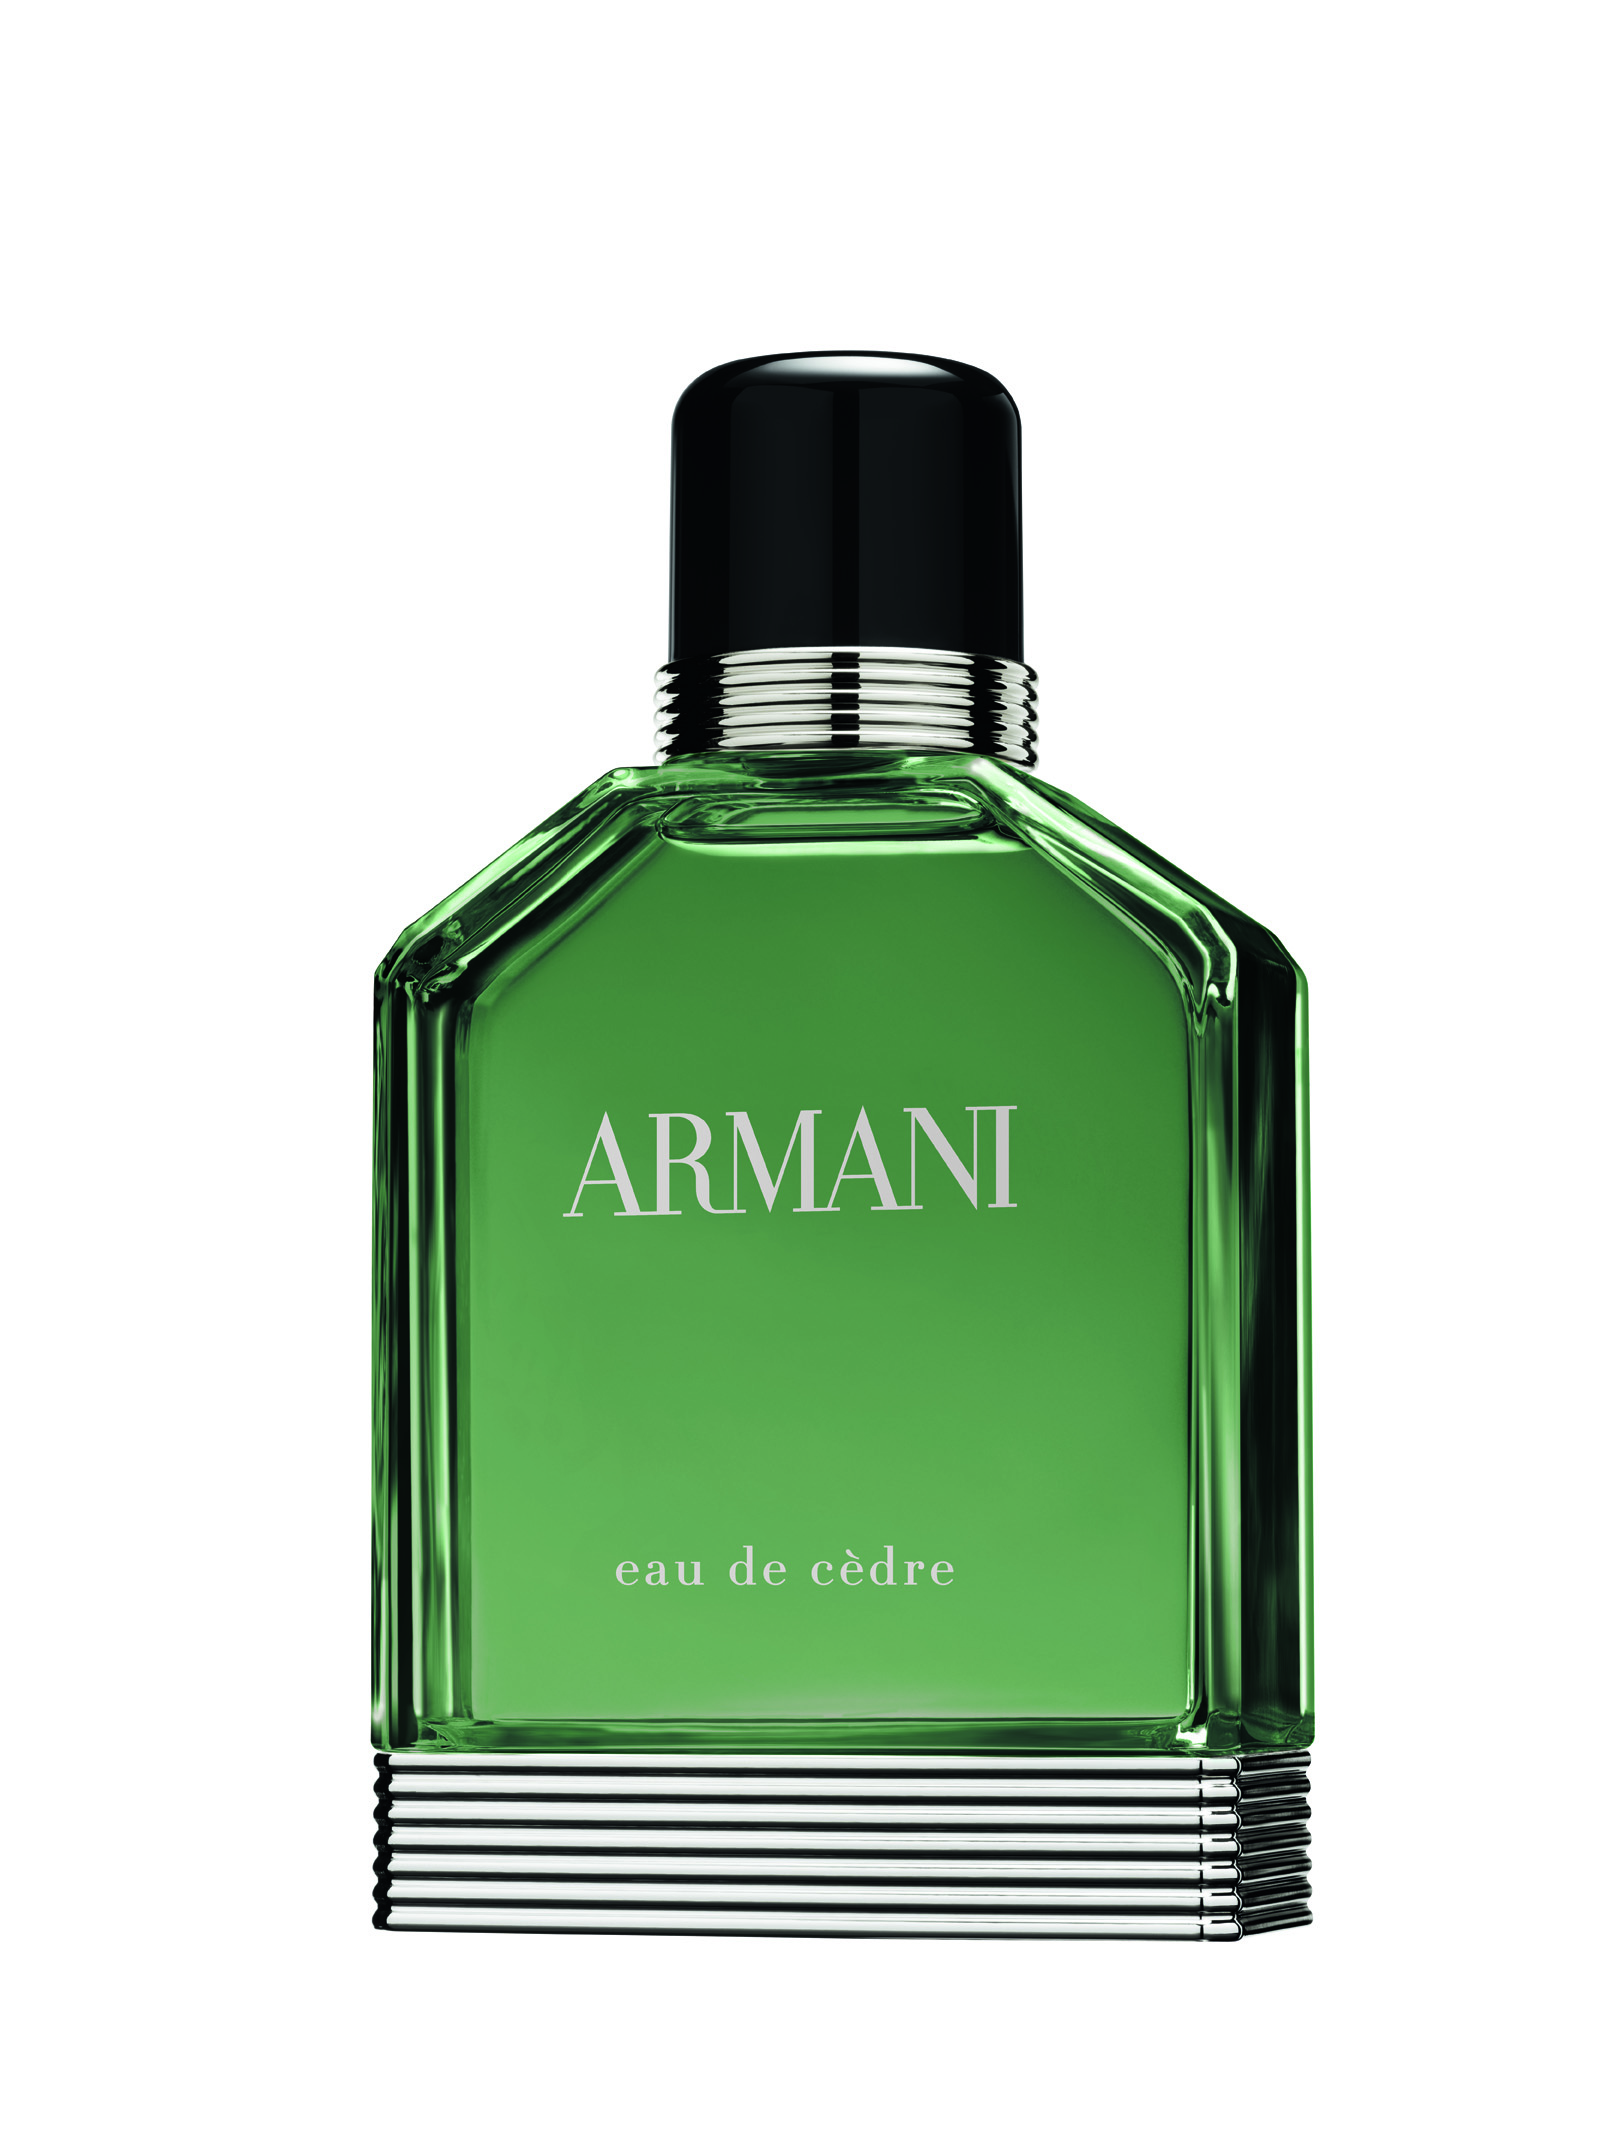 EDT 100 ml Giorgio Armani Eau de Cedre zakoupíte za 2370 Kč ve vybraných parfumeriích.